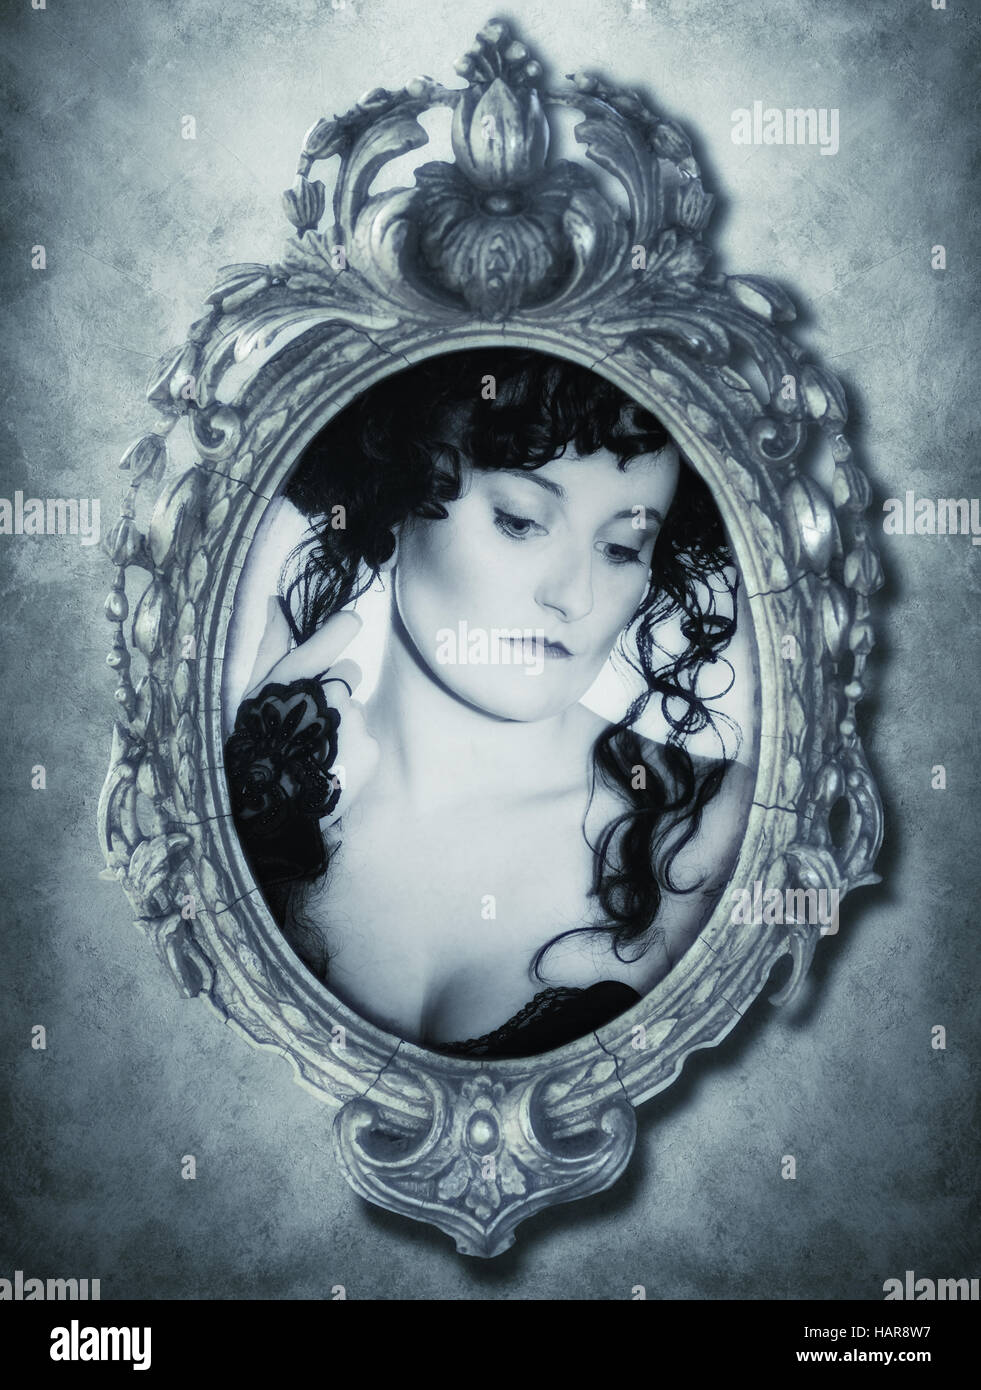 Portrait de femme gothique en miroir - ton bleu Banque D'Images